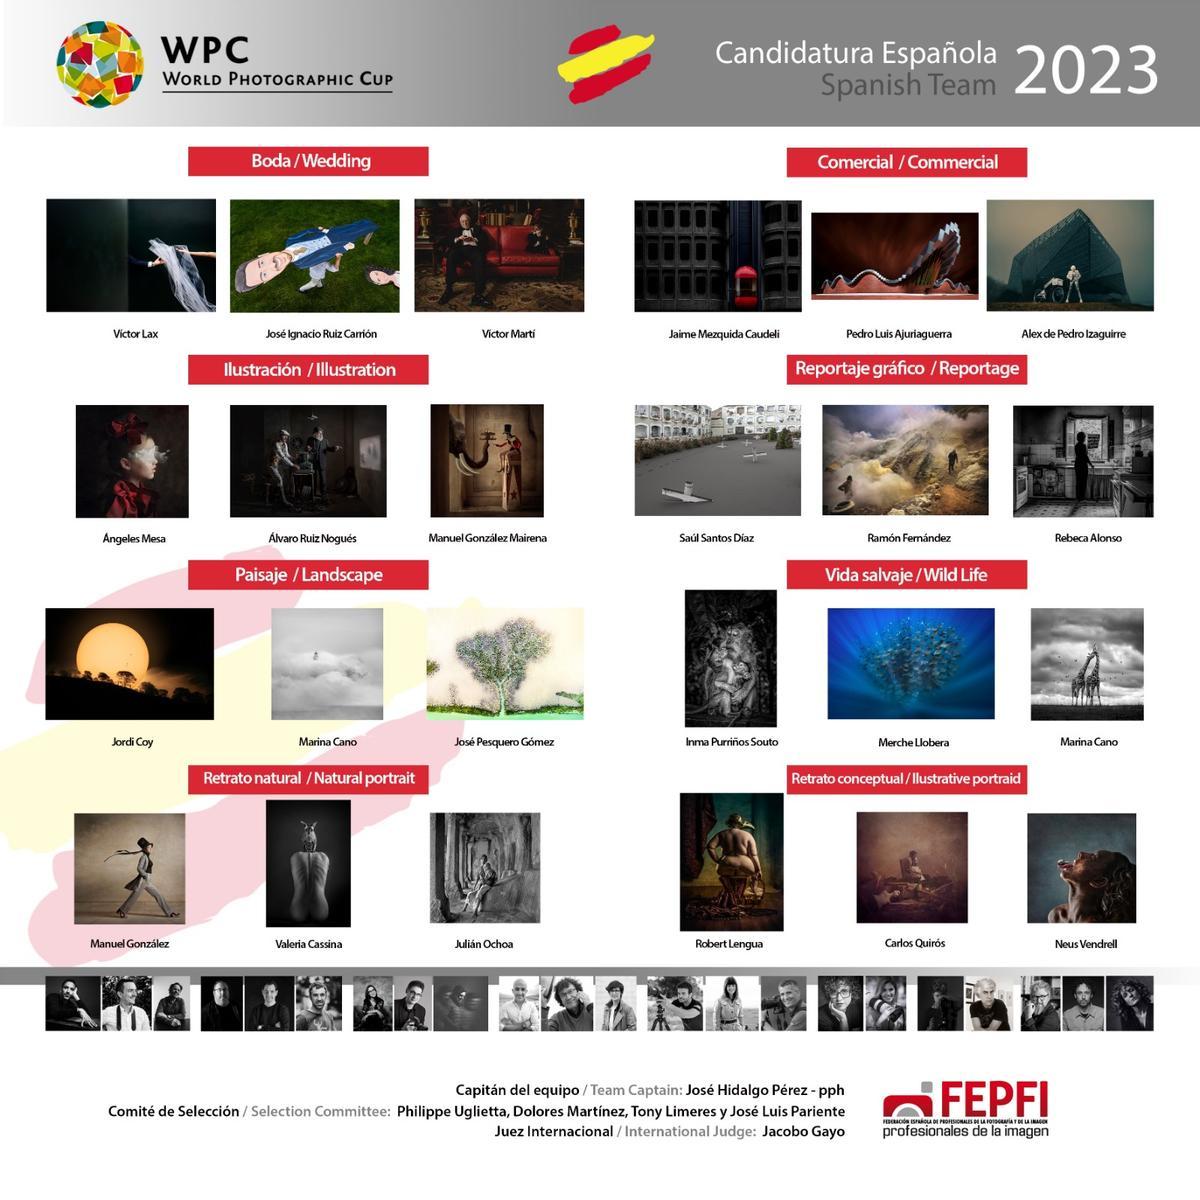 La candidatura española para la World Photographic Cup de 2023.